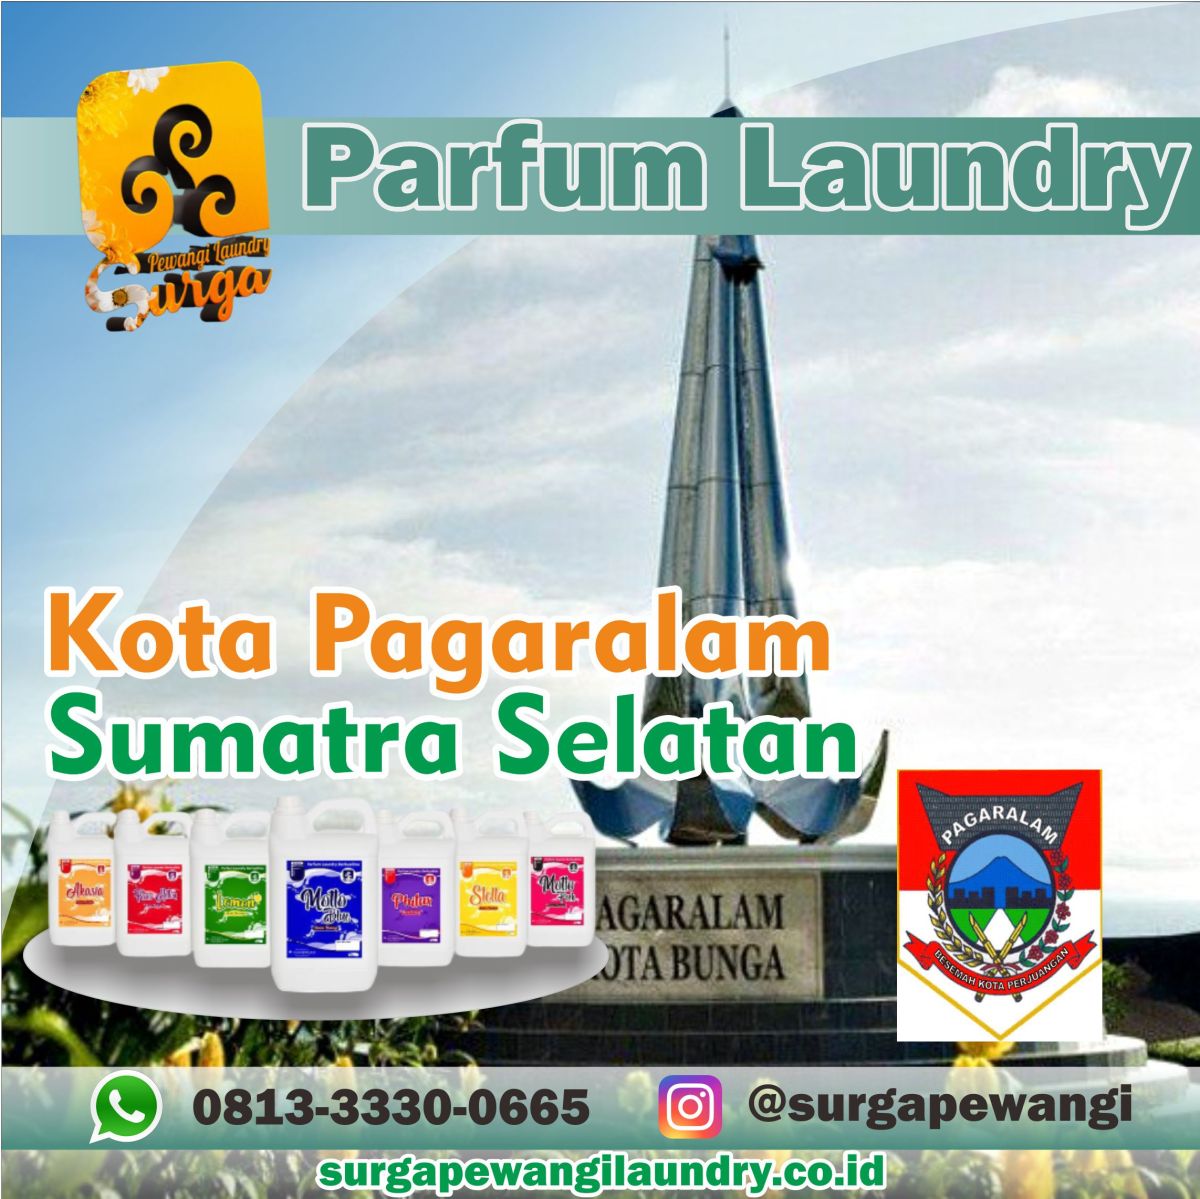 Parfum Laundry Kota Pagaralam, Sumatra Selatan